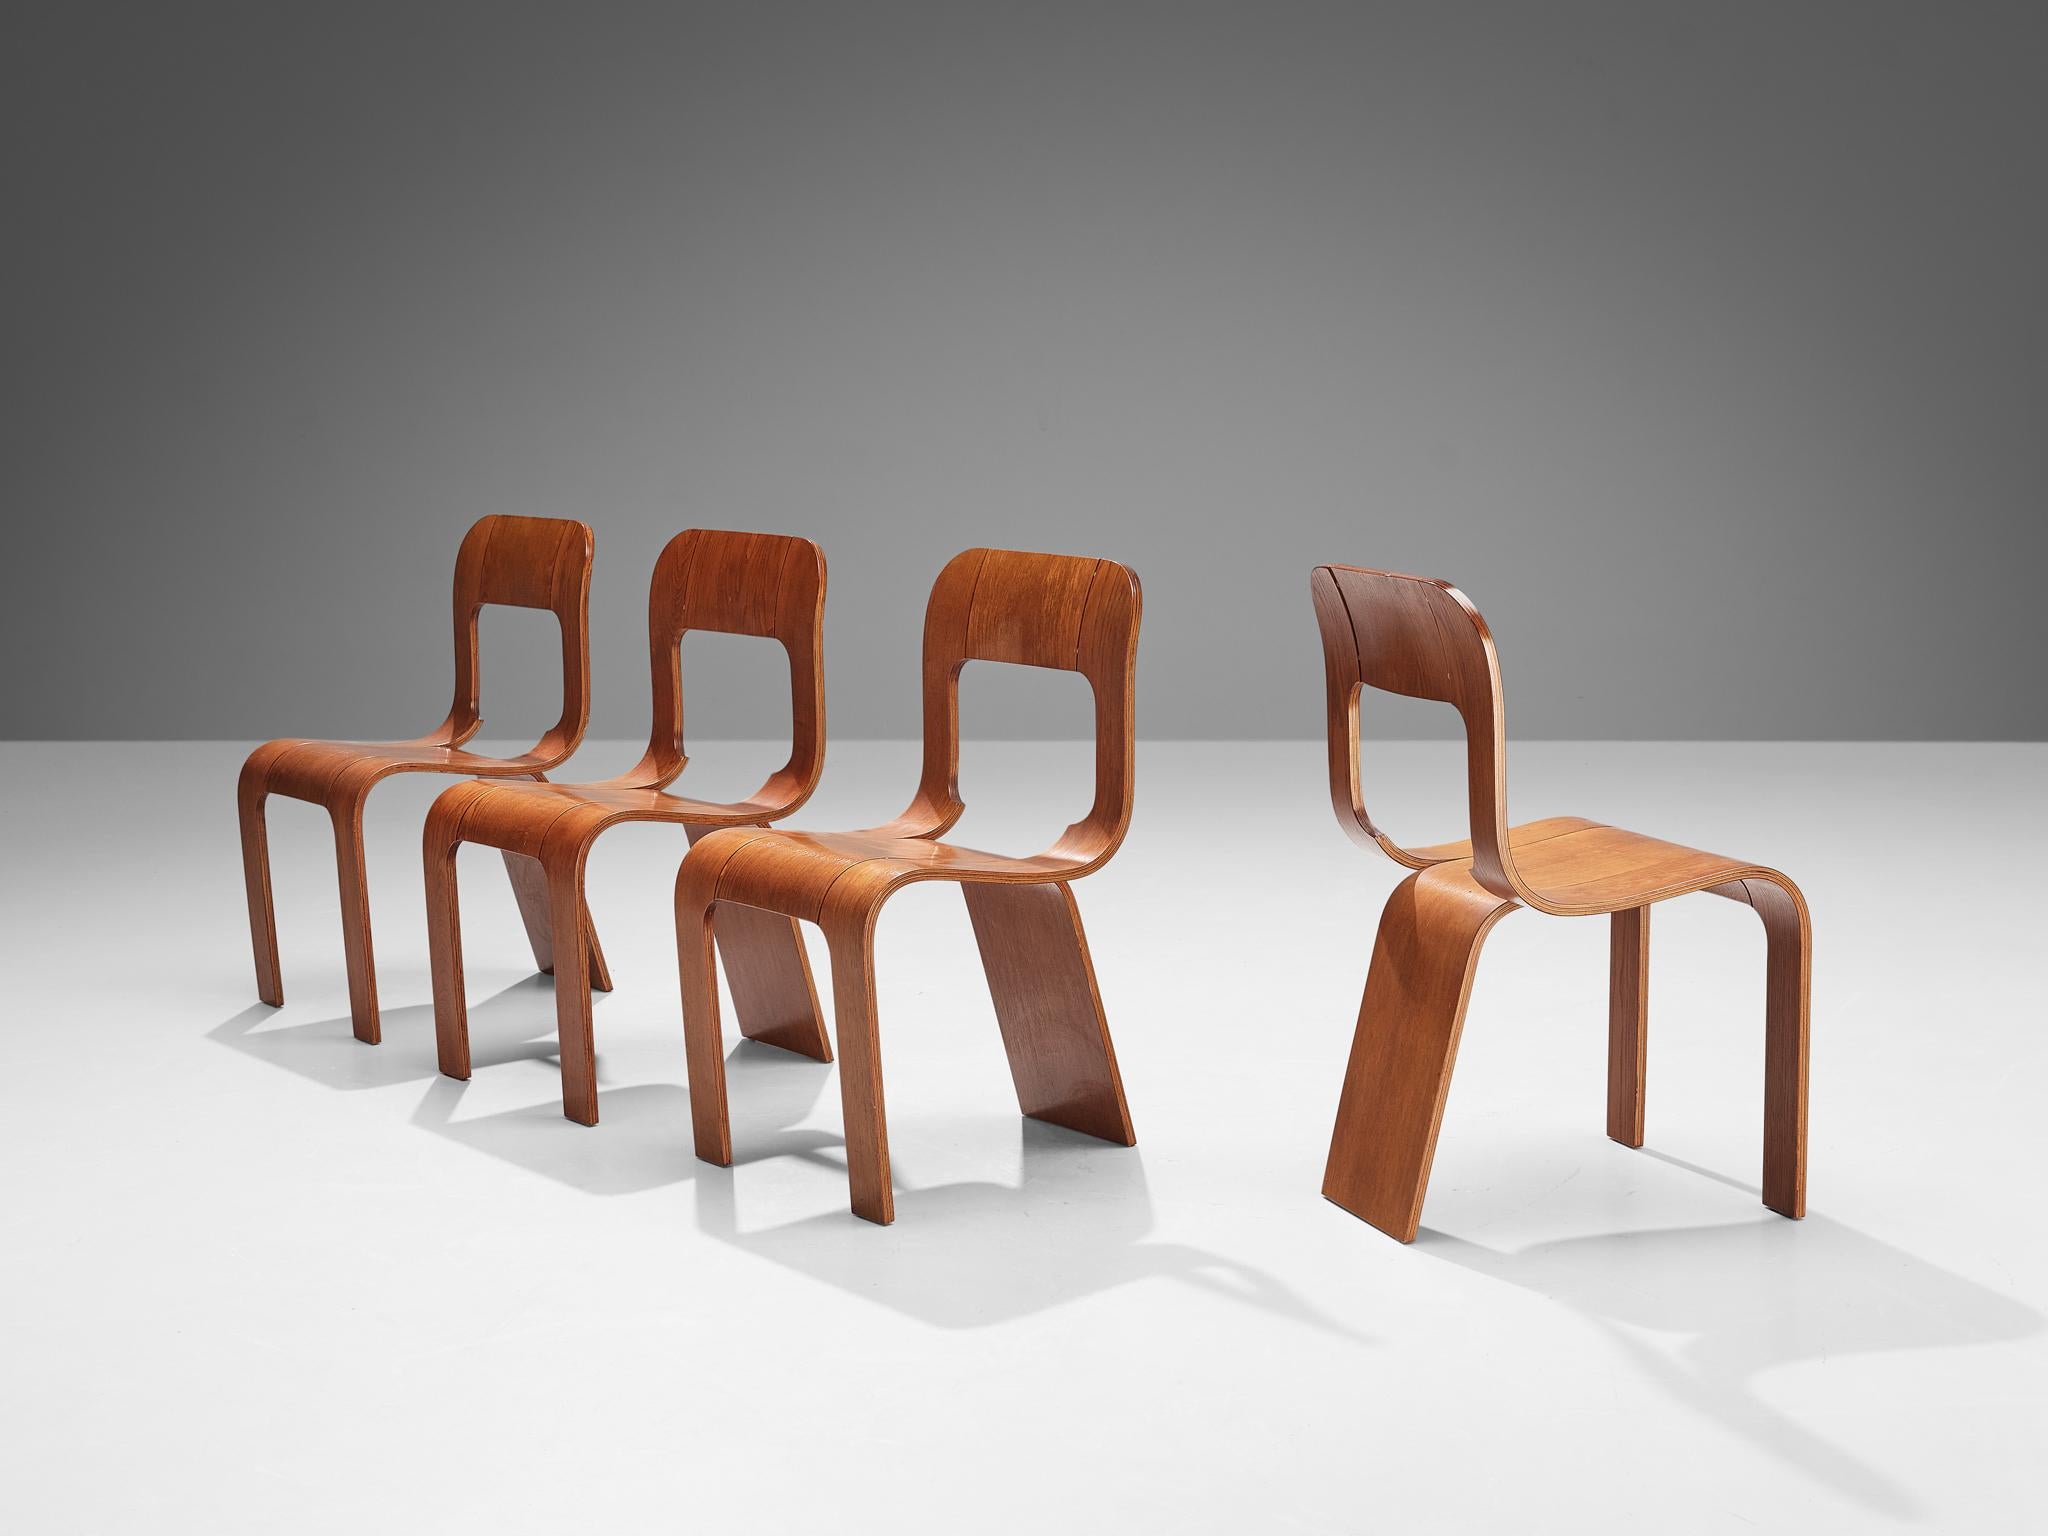 Gigi Sabadin für Stilwood, Satz von vier Esszimmerstühlen, Esche Sperrholz, Italien, 1970er Jahre.

Diese Stühle sind ein origineller Entwurf der Italienerin Gigi Sabadin und bestehen aus gebogenem Sperrholz mit furnierter Oberfläche. Das organische